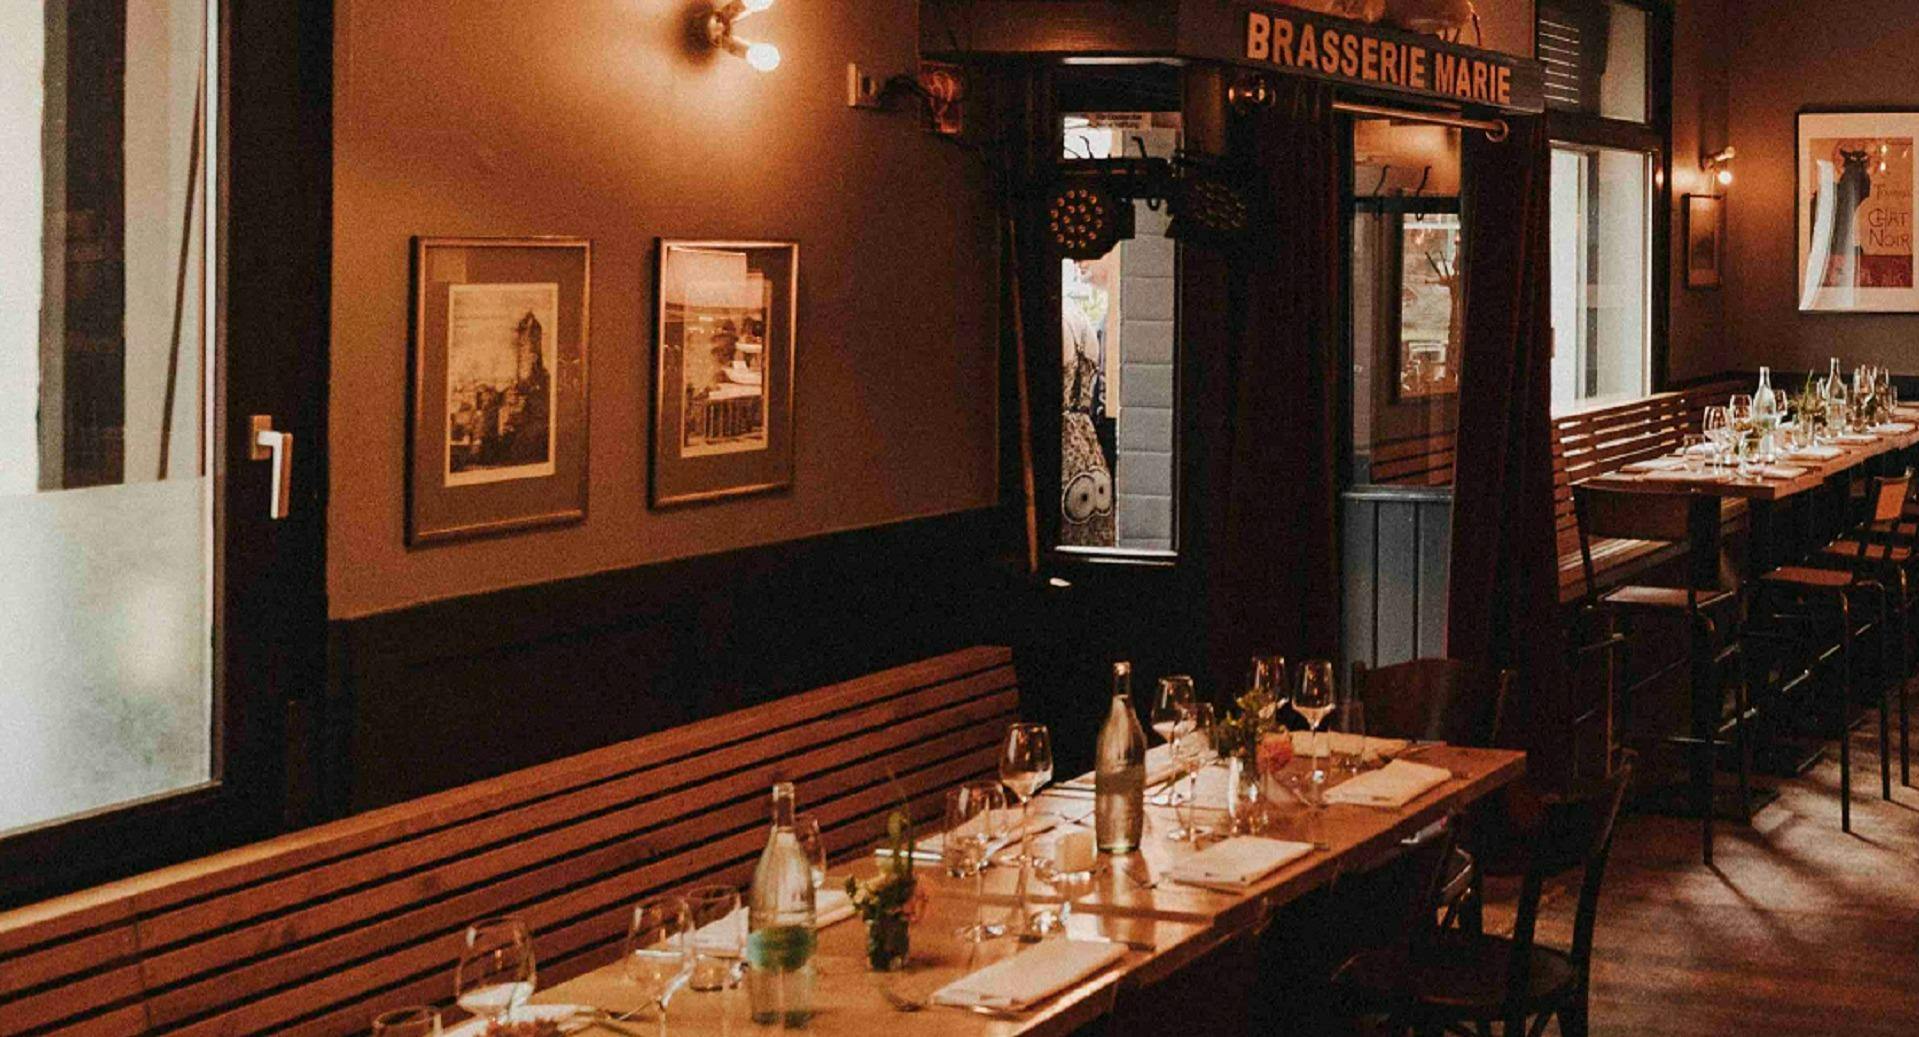 Fotos von Restaurant Brasserie Marie in Neustadt-Süd, Köln